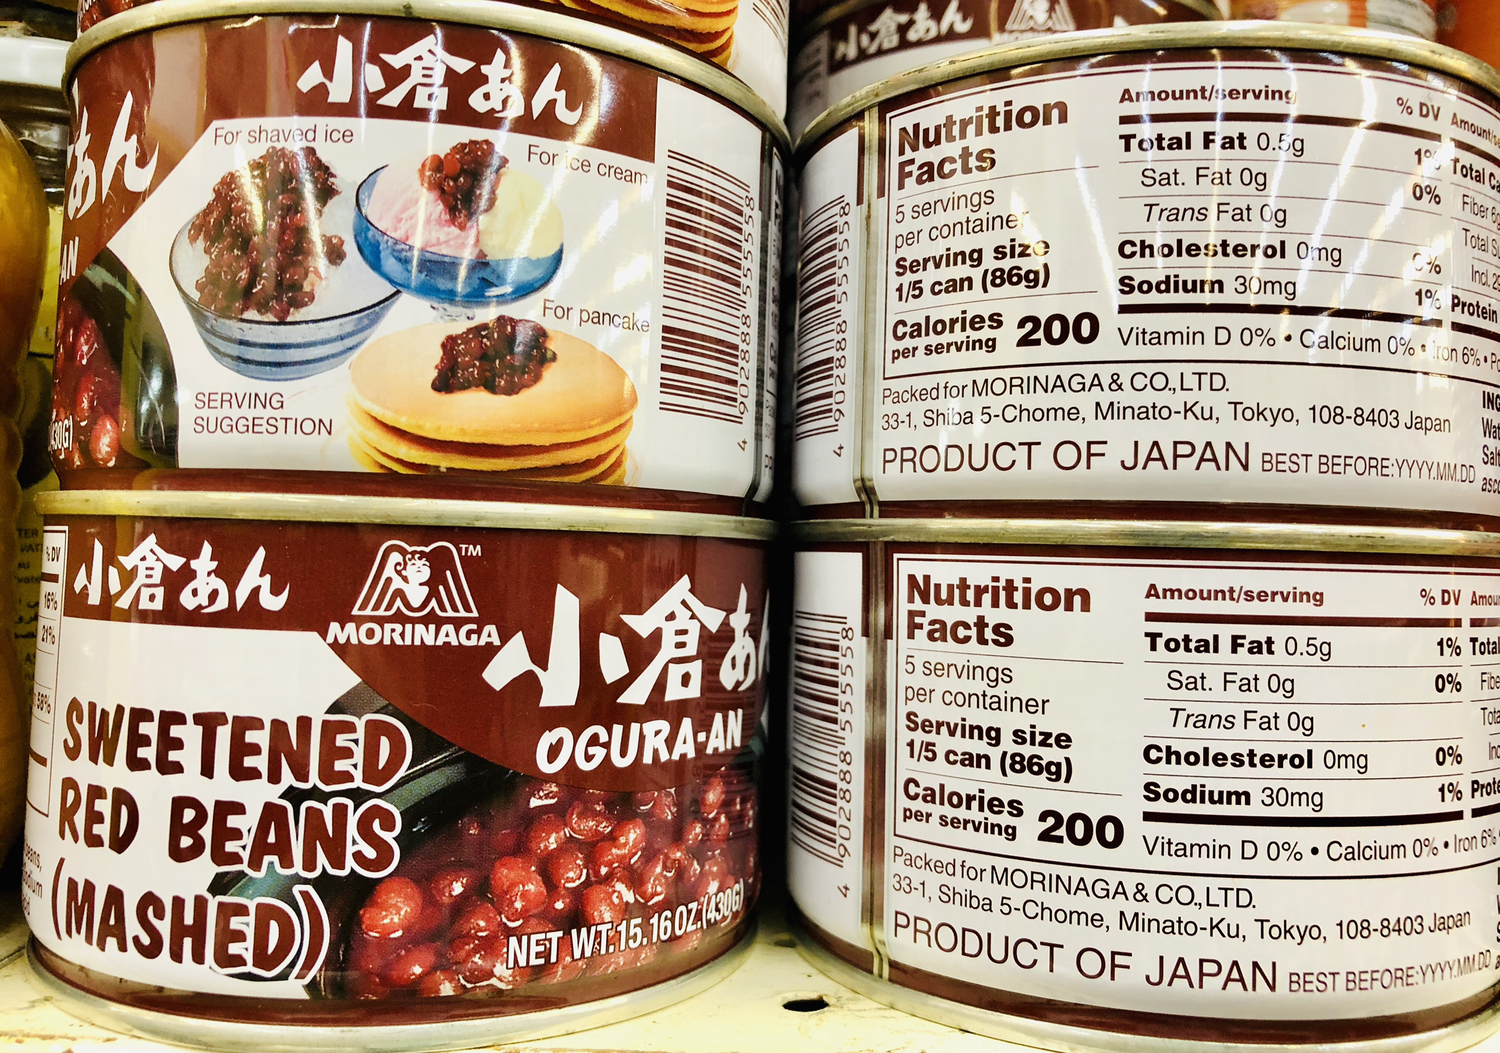 罐装日本小仓红豆OGURA AN CAN Sweet red beans(mashed) ~0.95lb